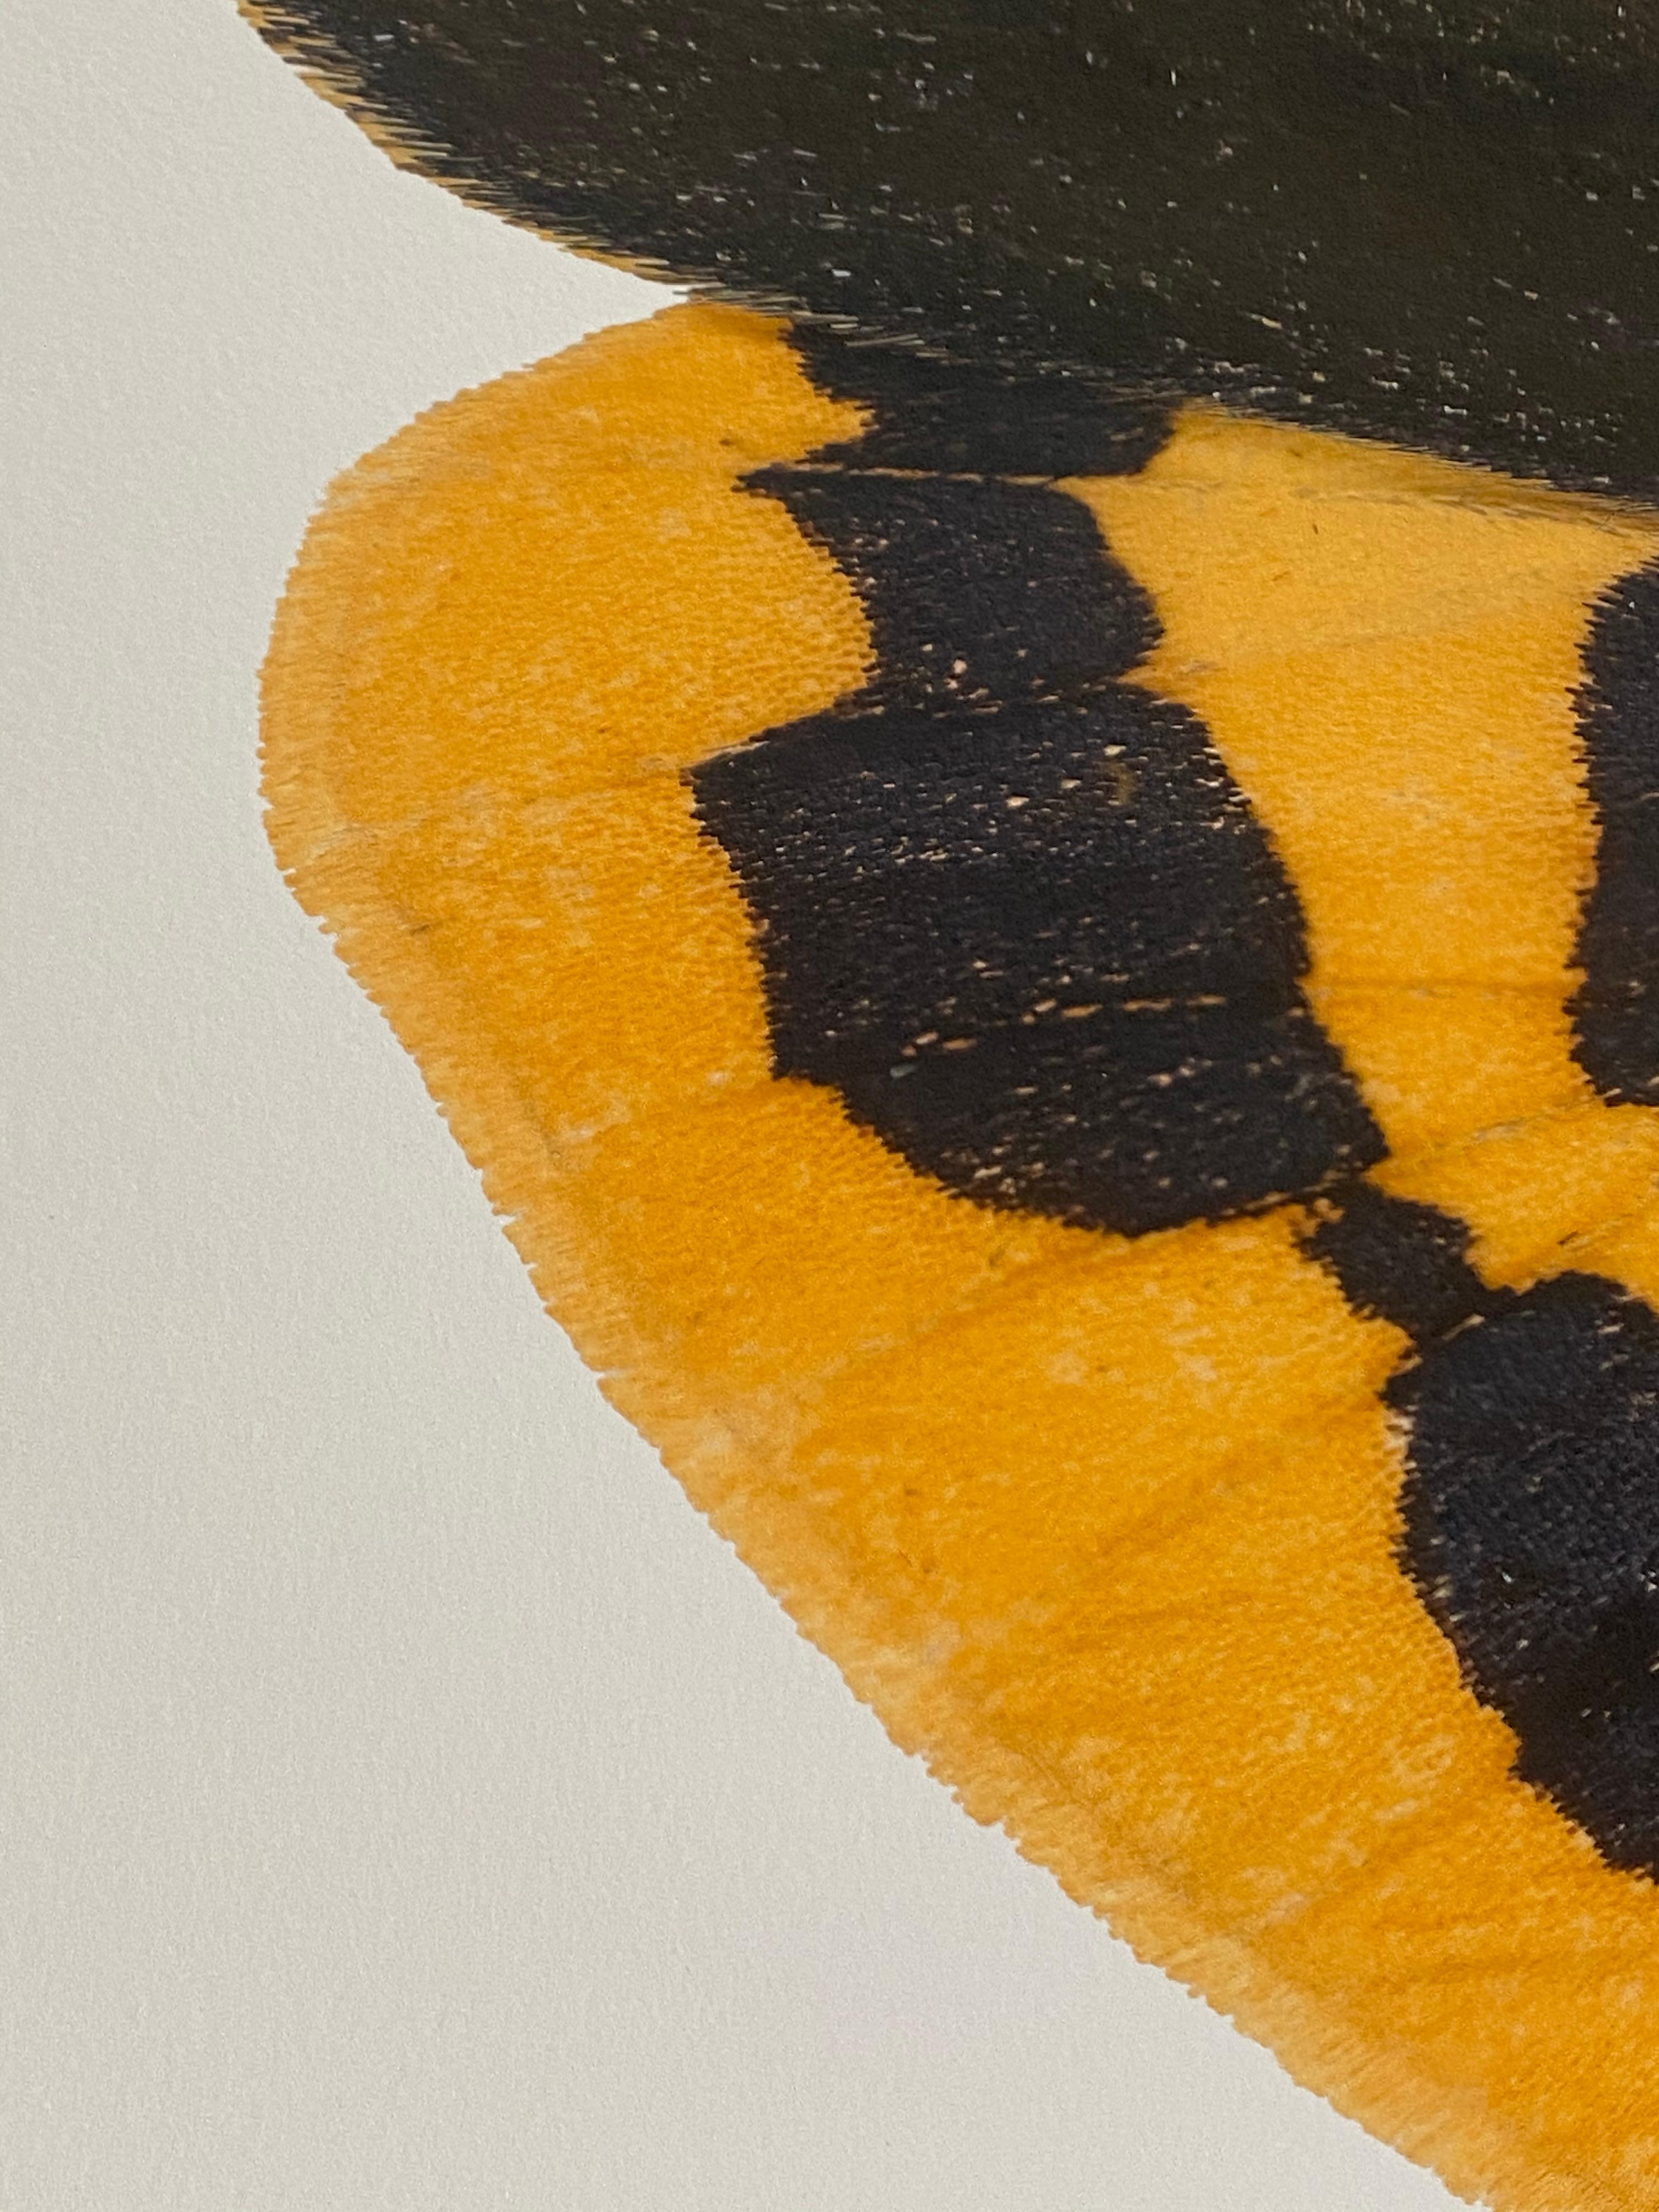 Pericallia Matronula mnnliche Naturfotografie, gelb, braun, rotes Moth auf Wei (Braun), Color Photograph, von Joseph Scheer